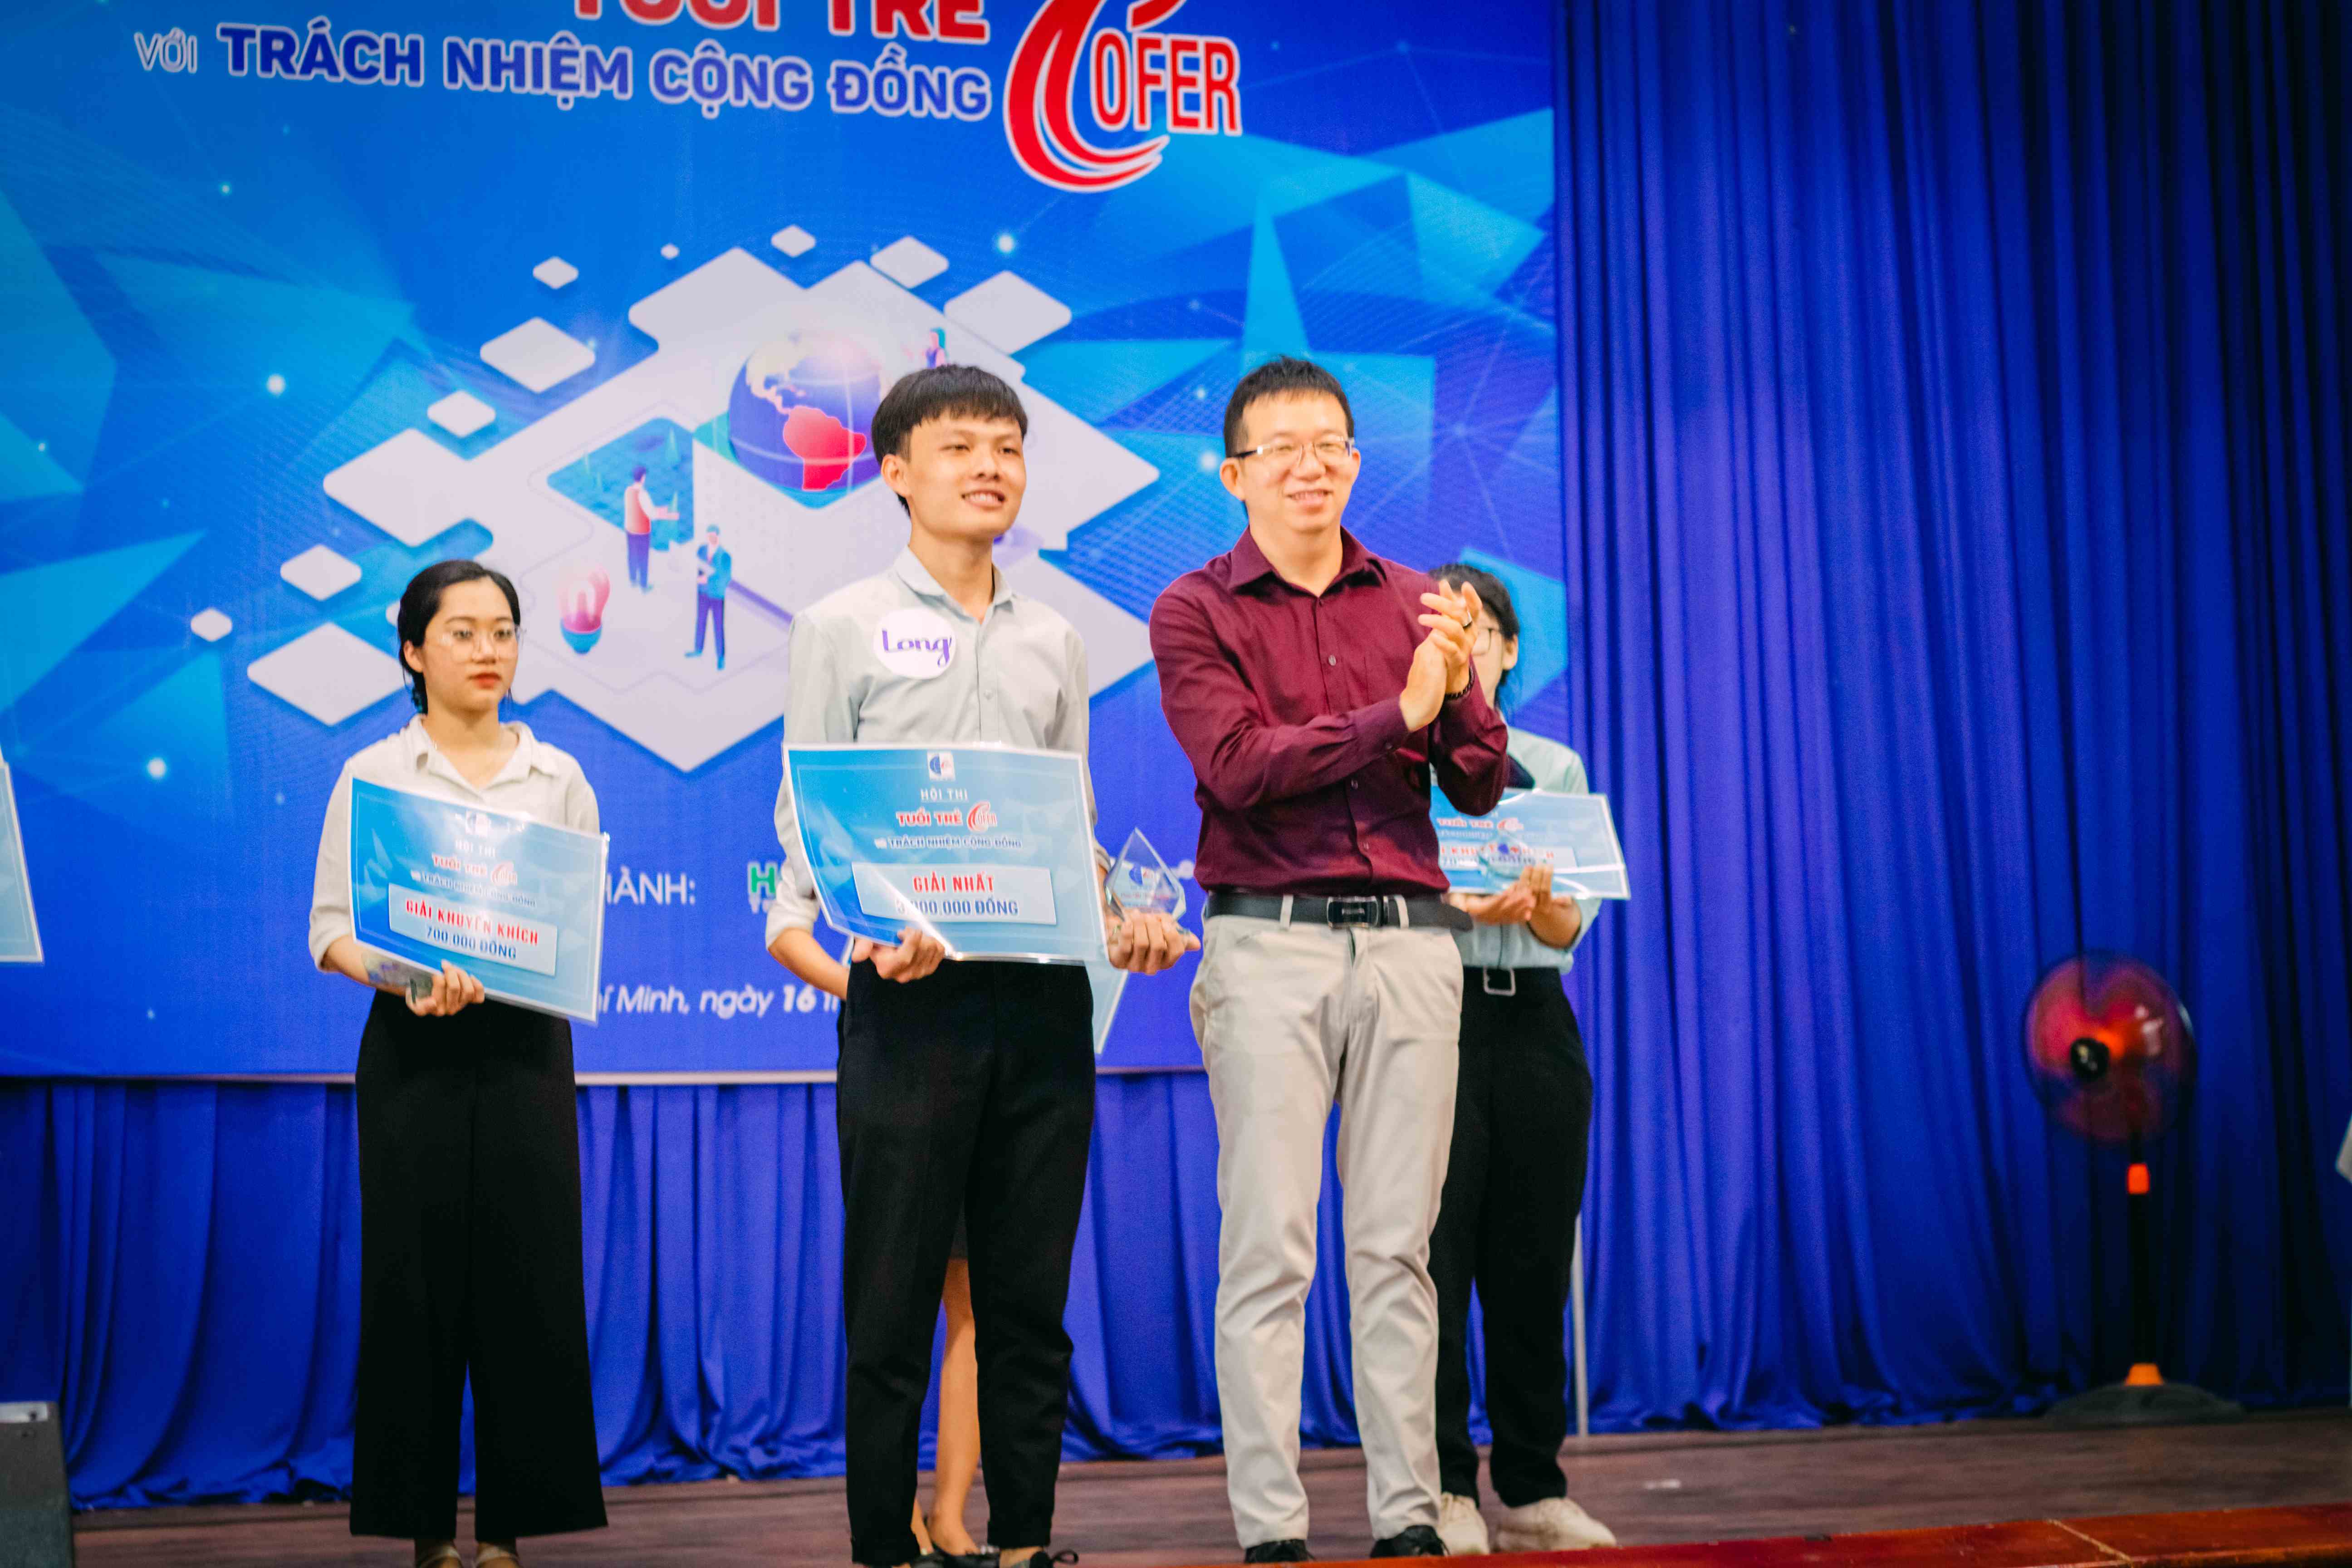 Giải Nhất Cuộc thi đã thuộc về Đào Thành Long – lớp CĐQTDN22I